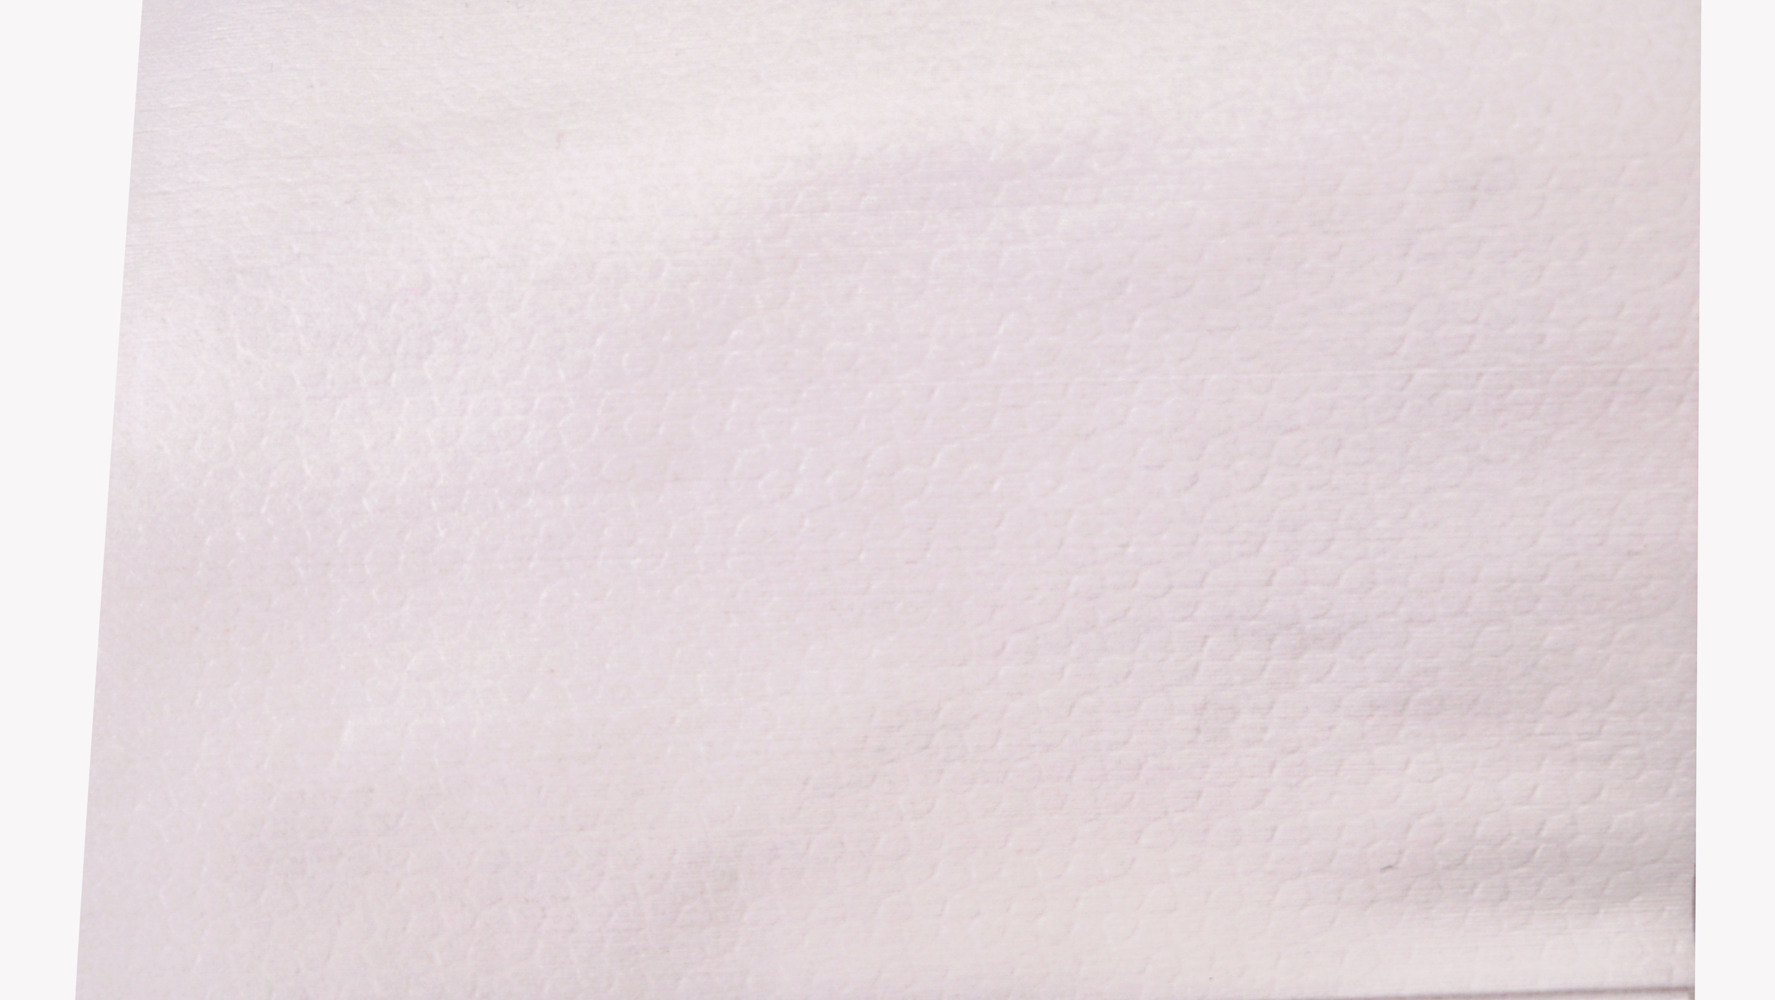 Kimtech™金特™强力高效擦拭布（折叠式），白色，300张/箱 - S050506906